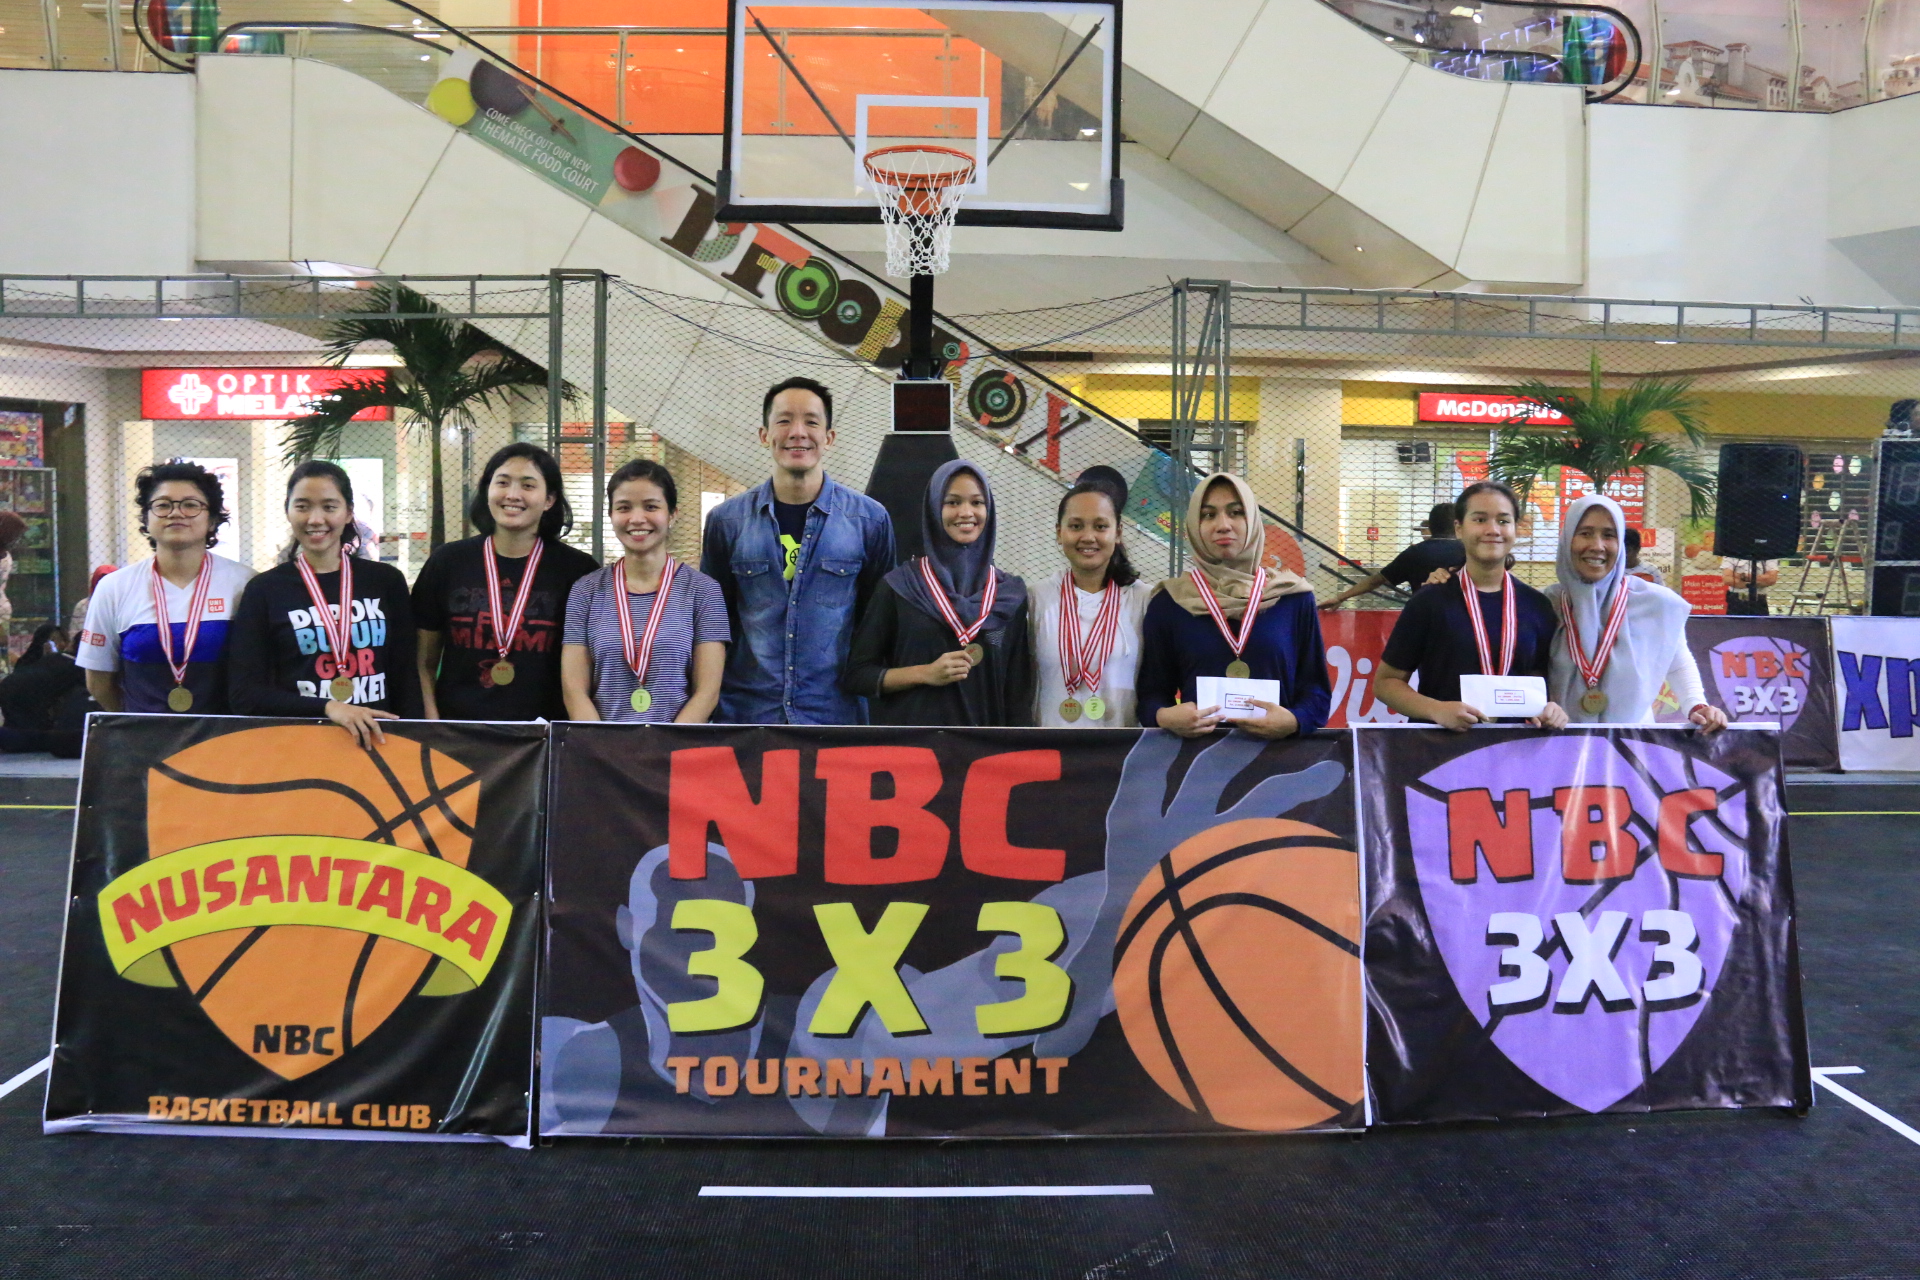 Inilah pemenang turnamen basket 3x3 NBC Depok putri.